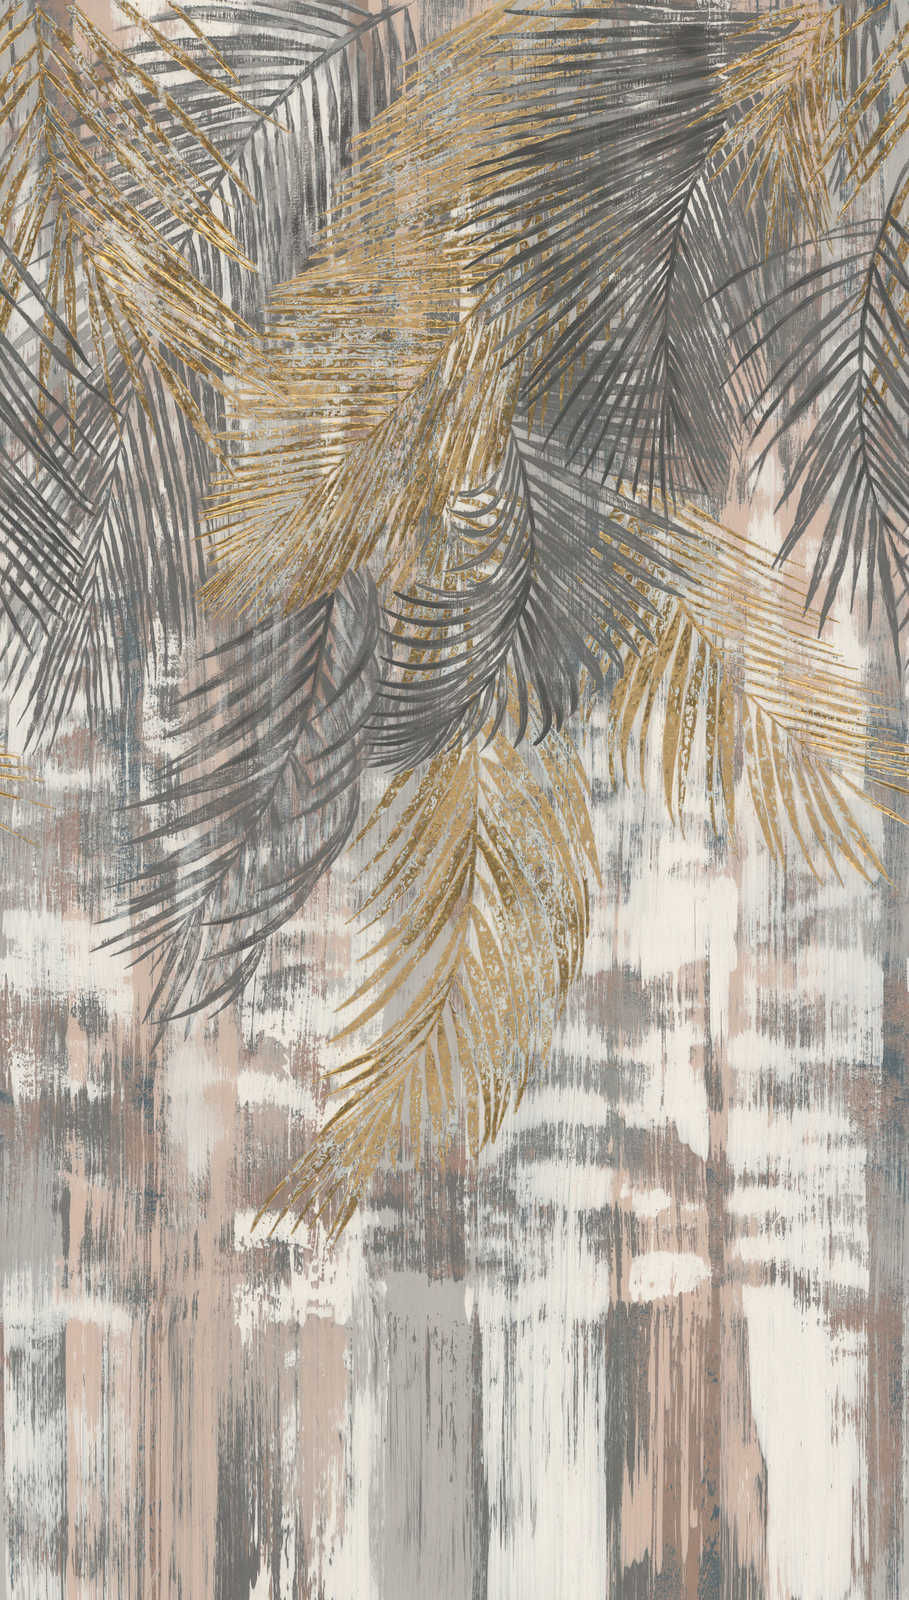             Papel pintado no tejido grandes hojas de palmera en aspecto usado - gris, amarillo, beige
        